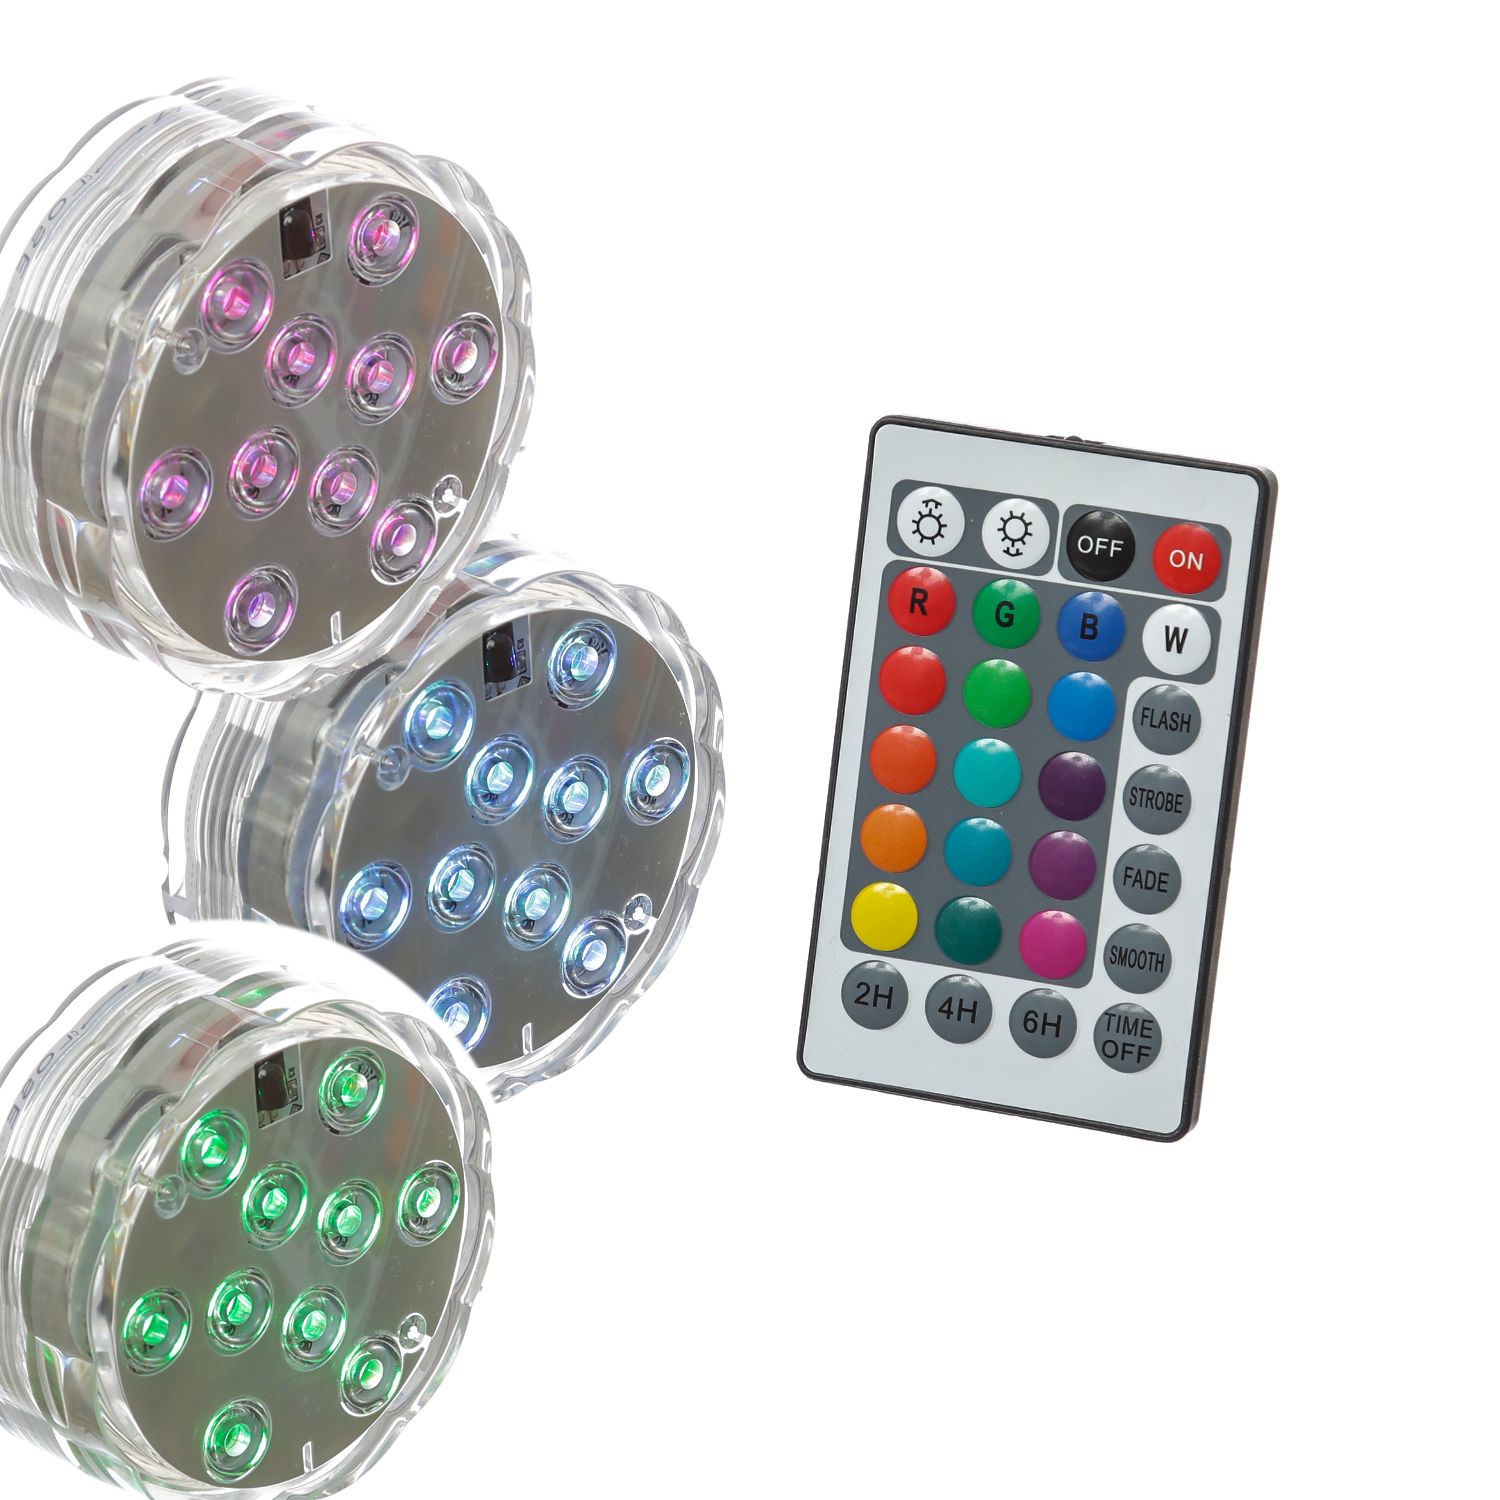 LED Unterwasserlicht RGB - Farbwechsler für Vasen, Schalen, Teich, Aquarium - Fernbedienung